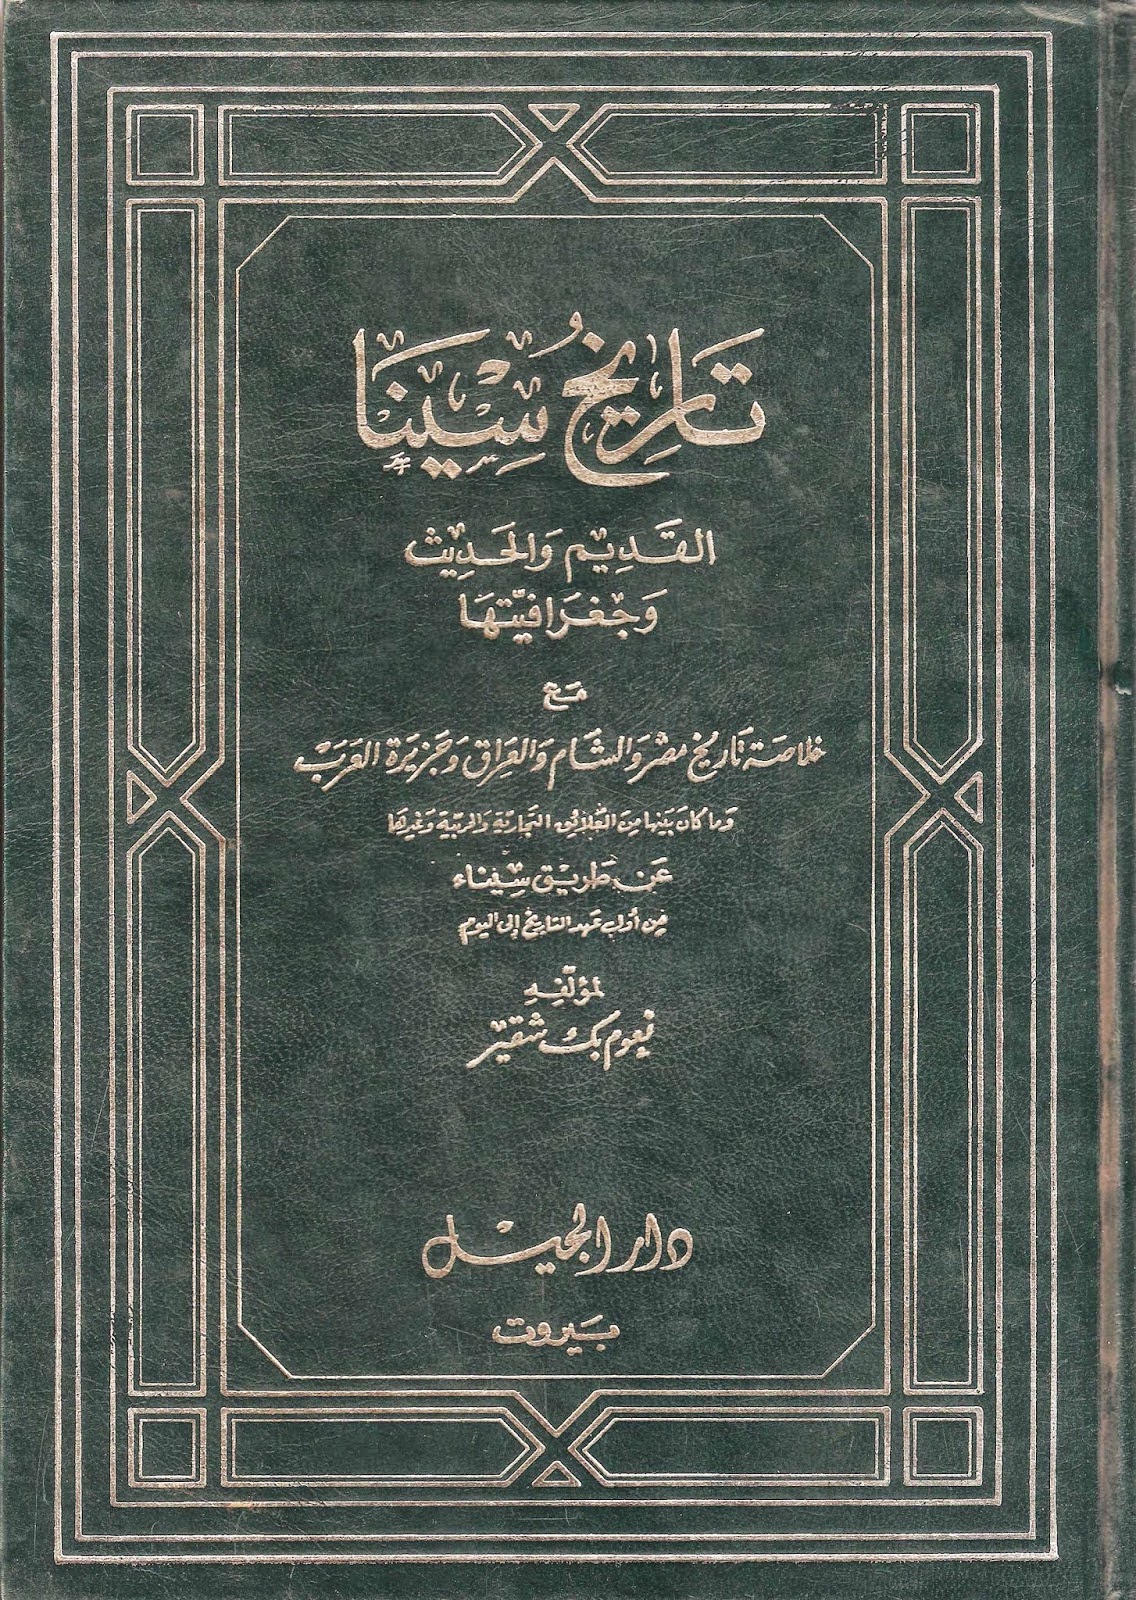 غلاف كتاب تاريخ سيناء لـ نعوم شقير